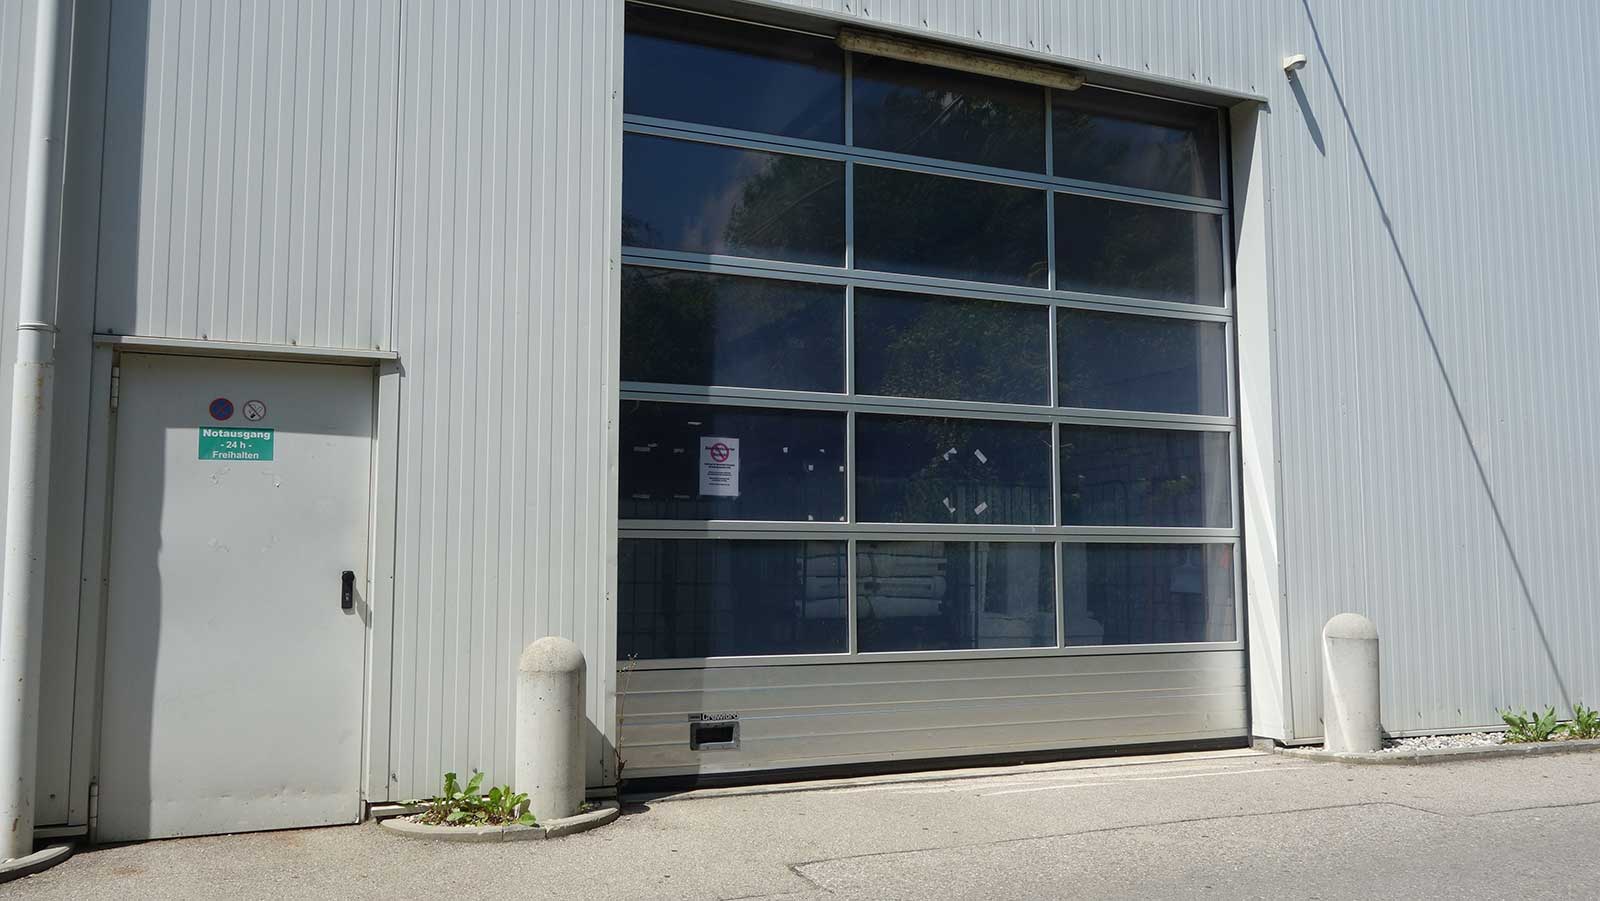 Logivest vermittelt knapp 1.500 Quadratmeter Hallen- und Bürofläche an INDA Warenvertriebs GmbH Bild